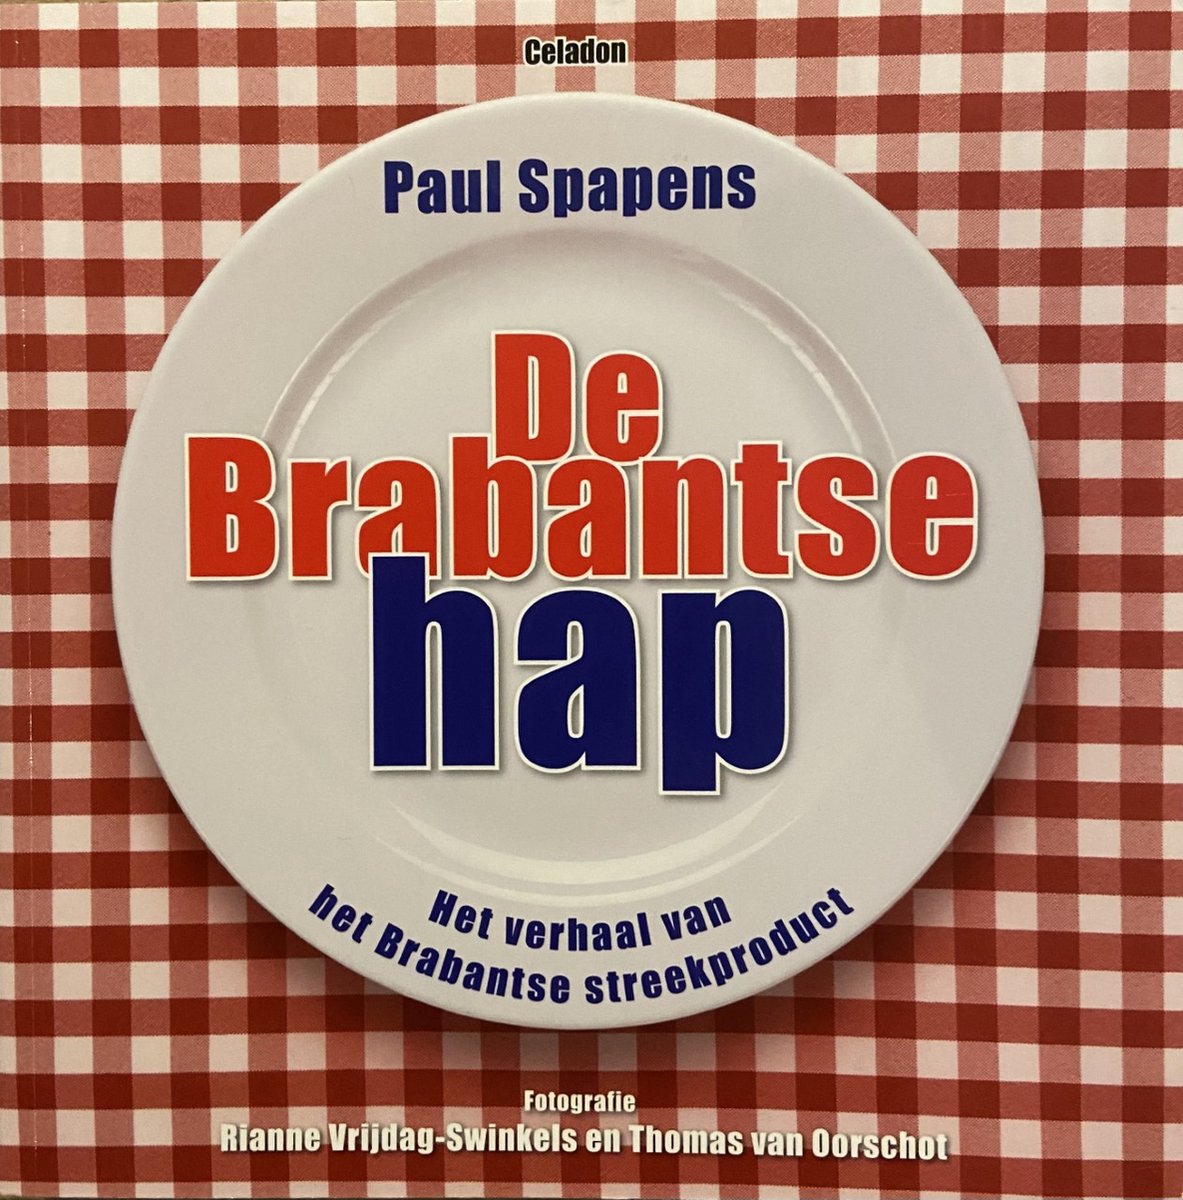 Brabantse hap